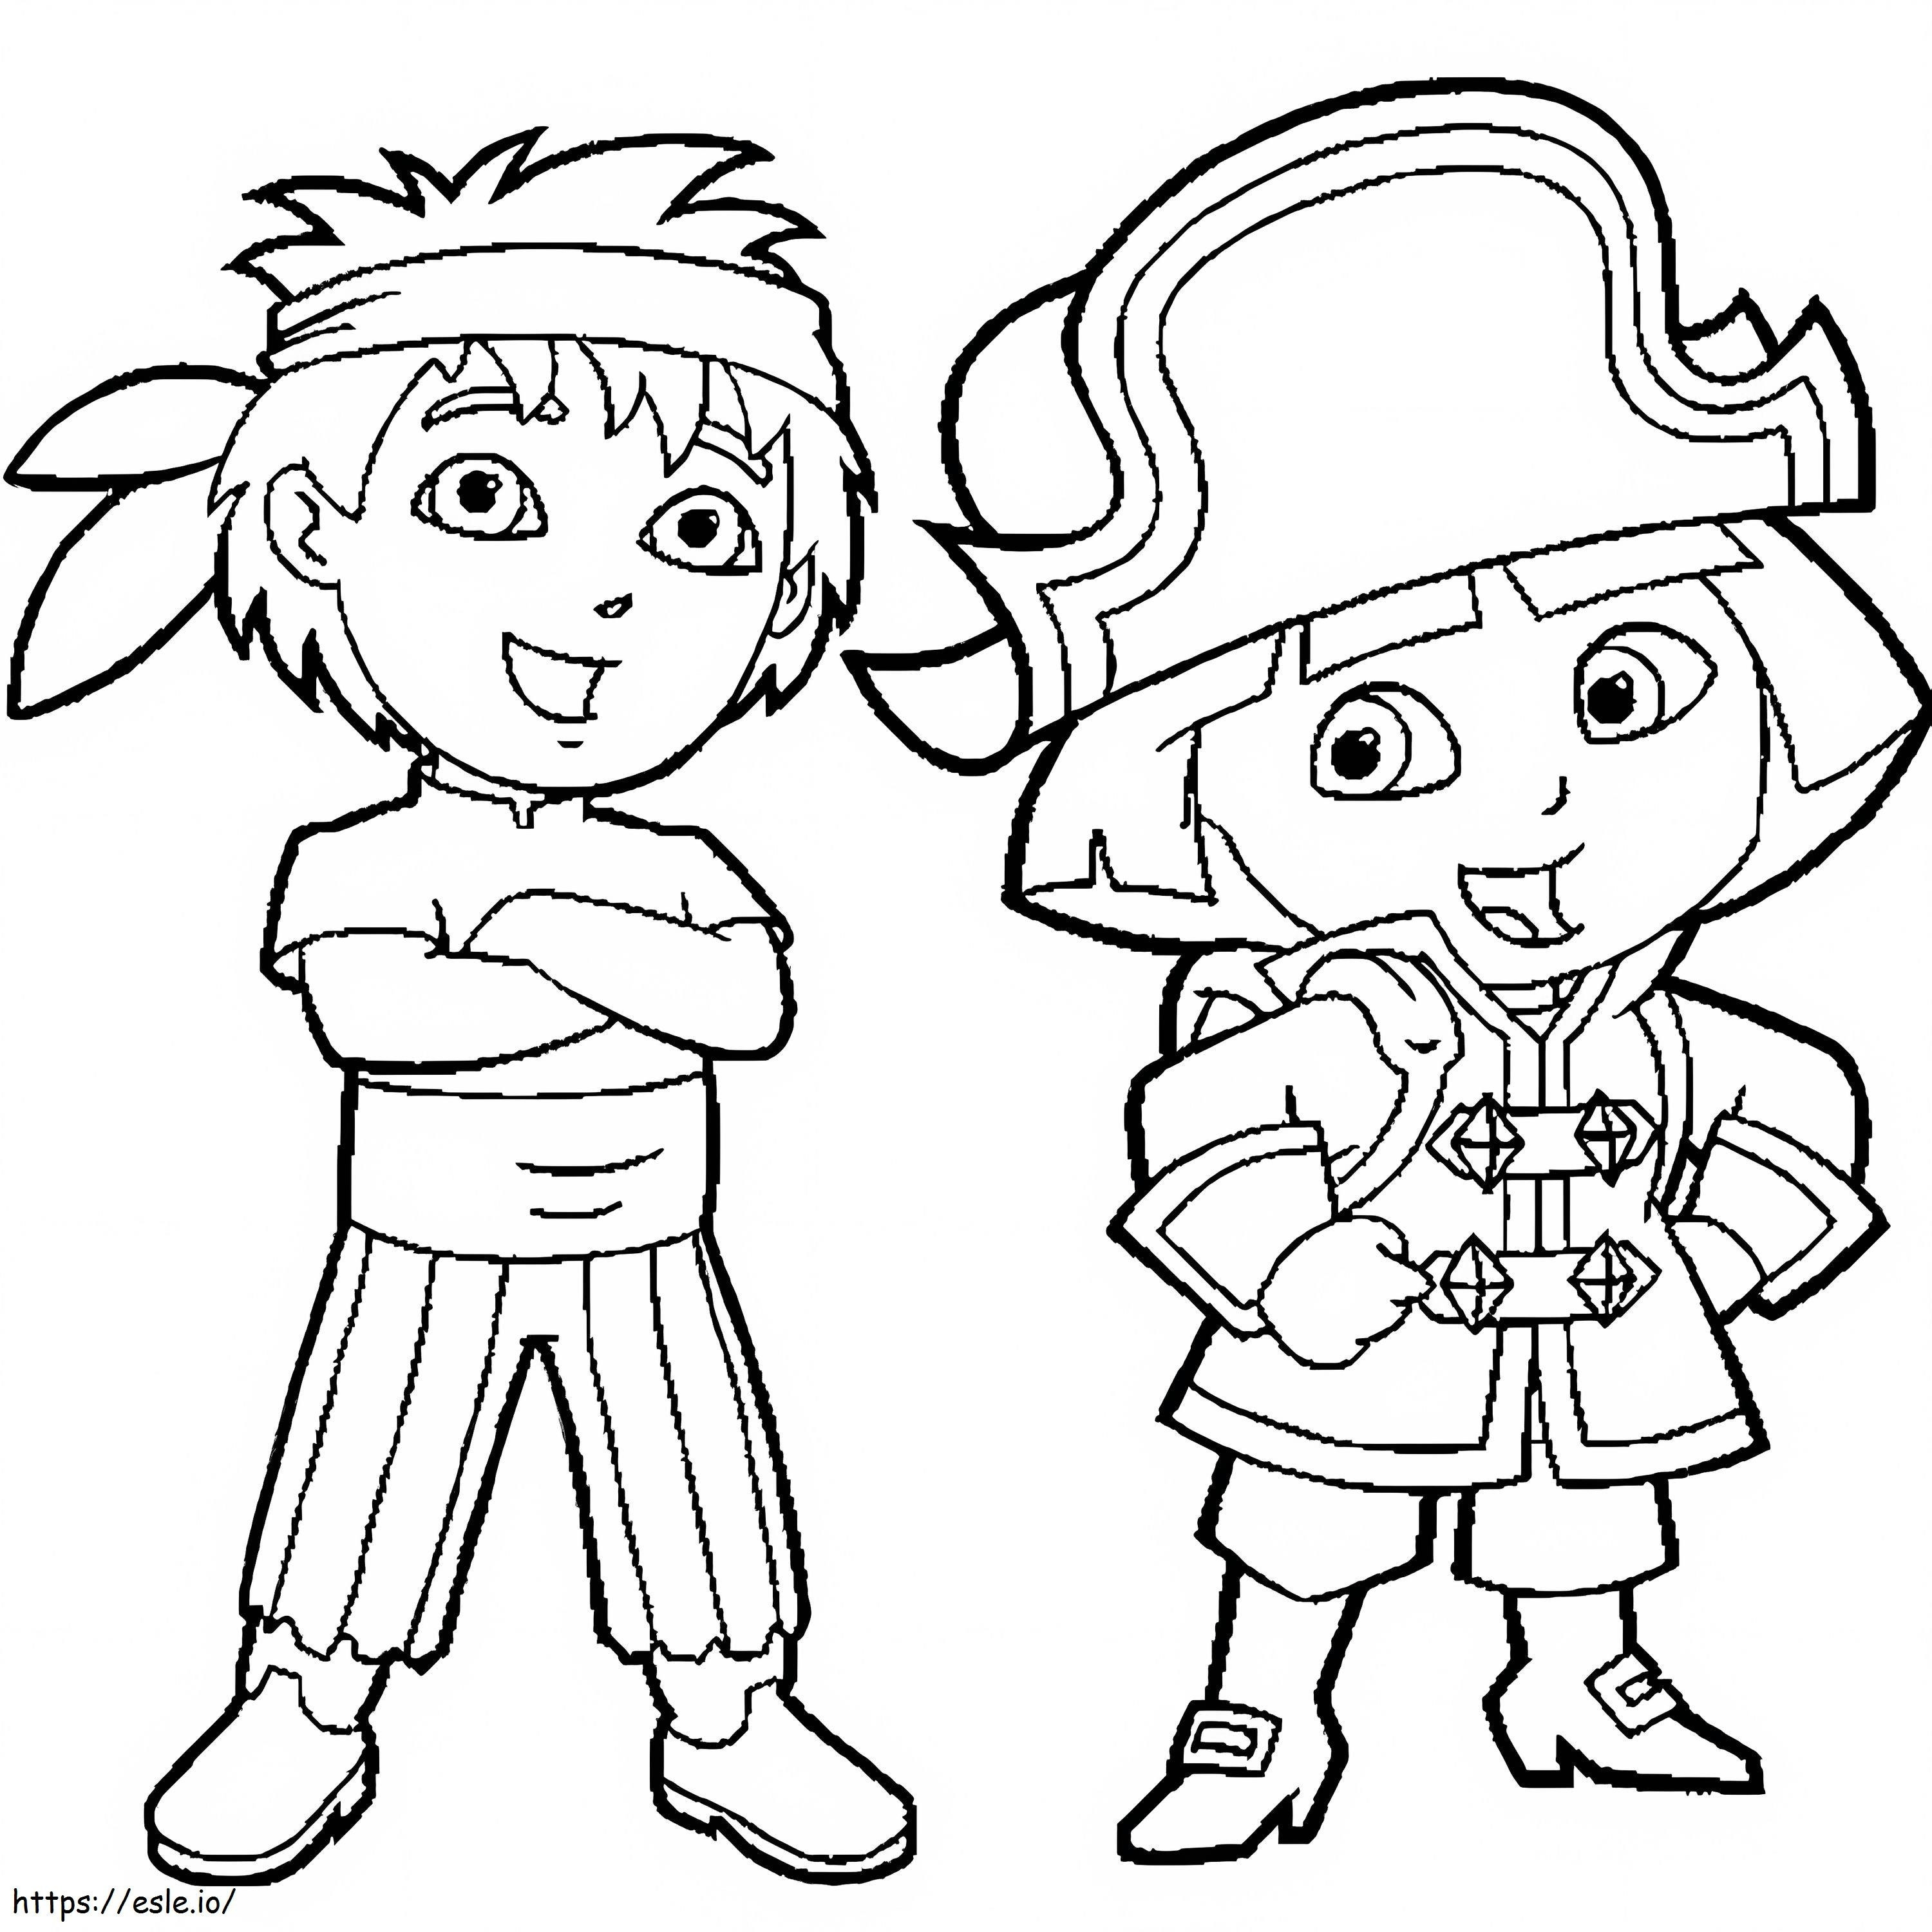 Diego și Dora Pirate de colorat